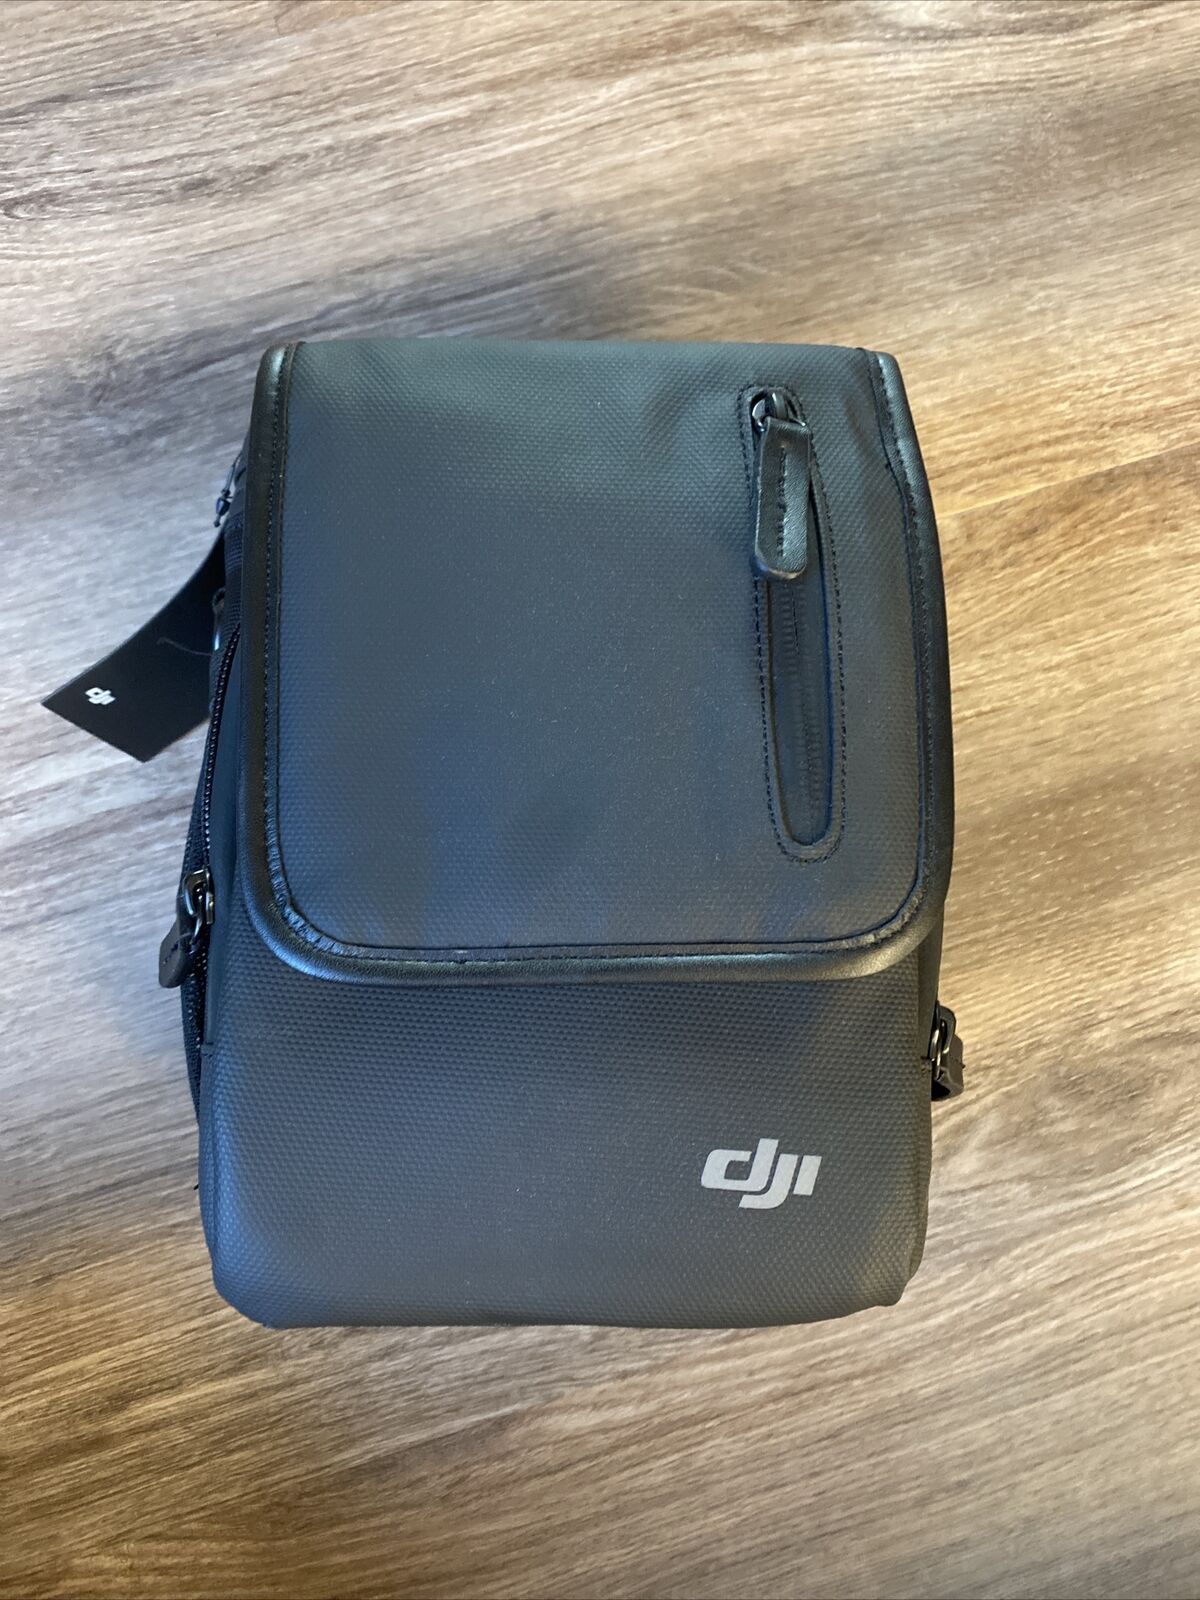 DJI Mavic Drone soft carrying case